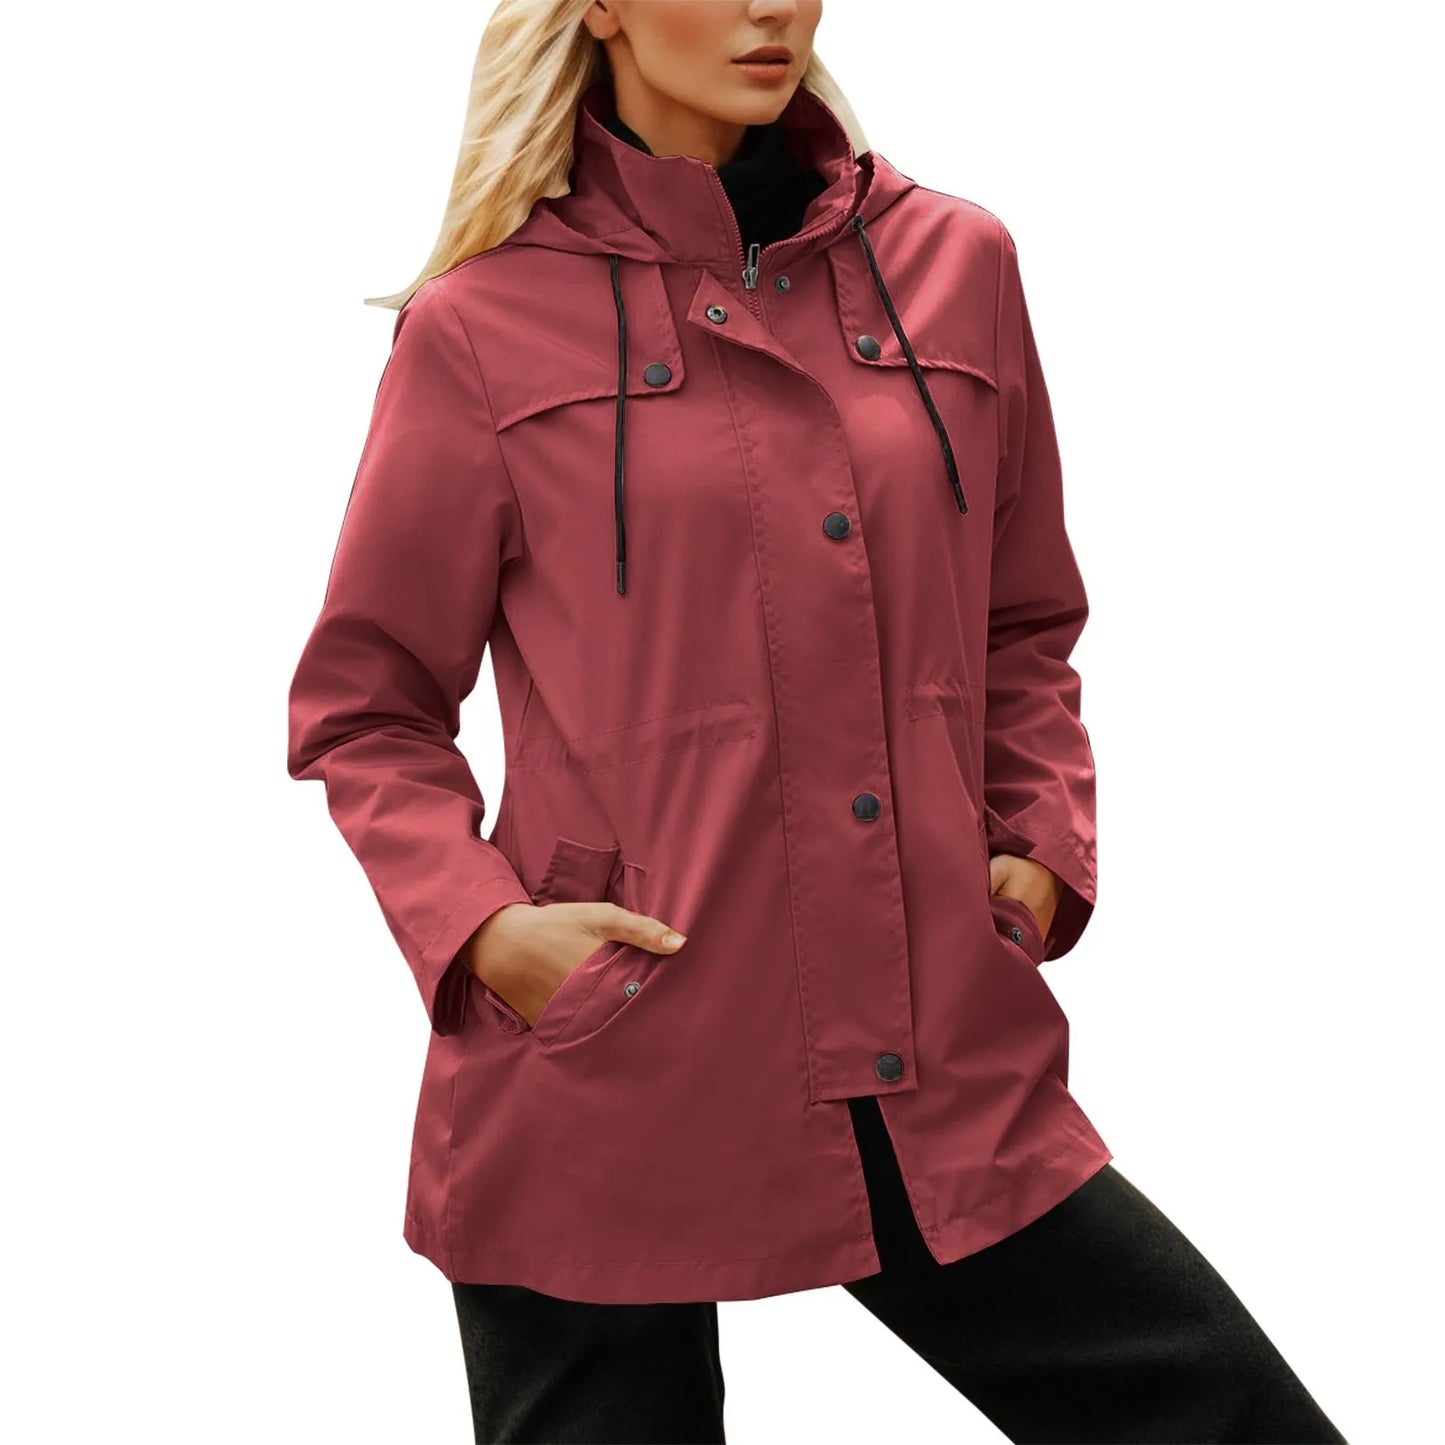 Lightweight Windproof Rainjacket Women's Outdoor Zippers Hooded Windbreaker Fall And Winter Waterproof Hiking Jacket Outerwear